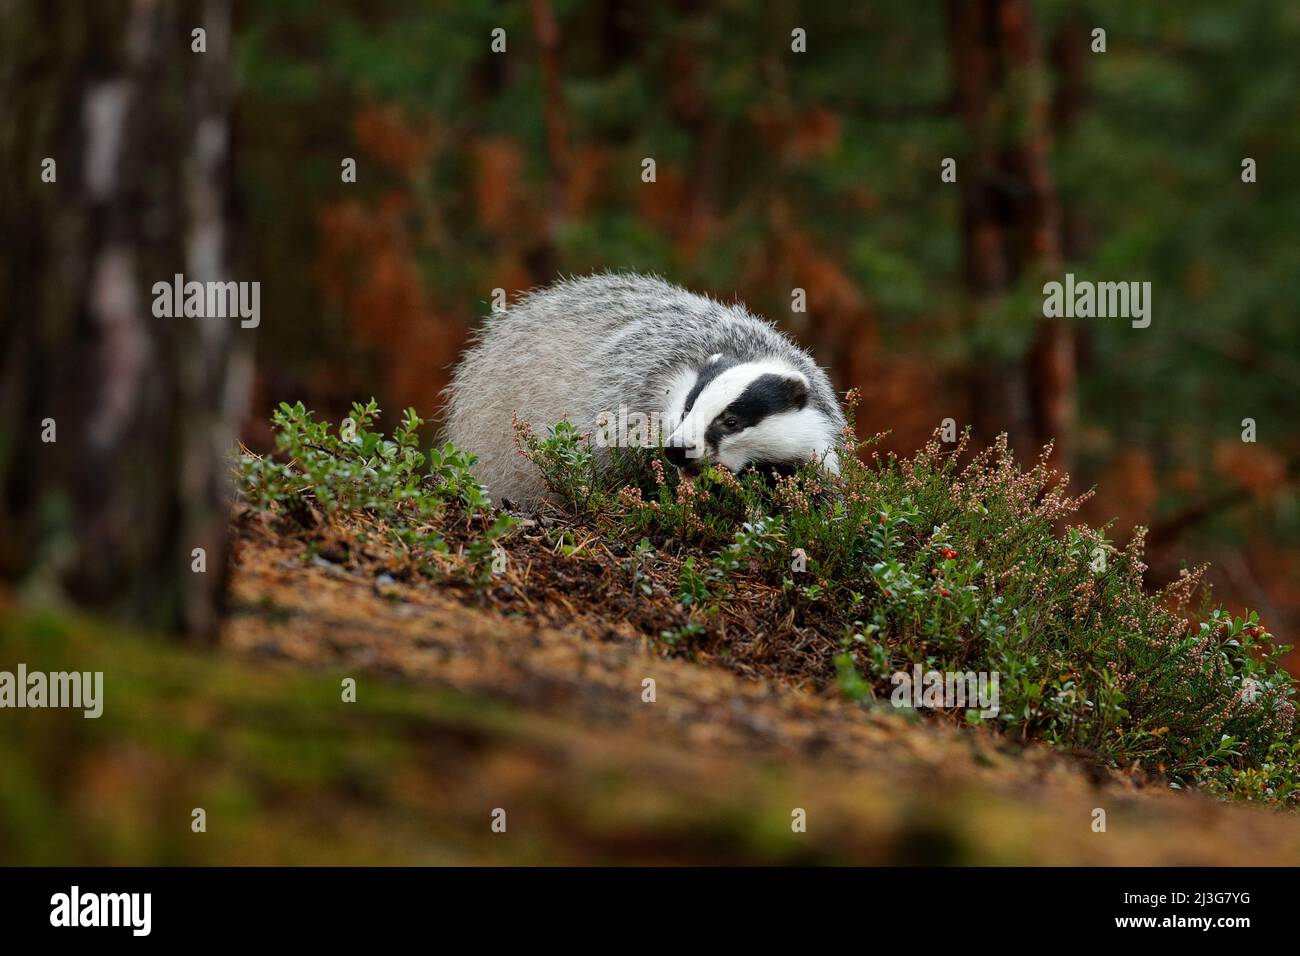 Badger in forest, animal nature habitat, Czech, Europe. Wildlife scene. Wild Badger, Meles meles, animal in wood. European badger, autumn pine green f Stock Photo